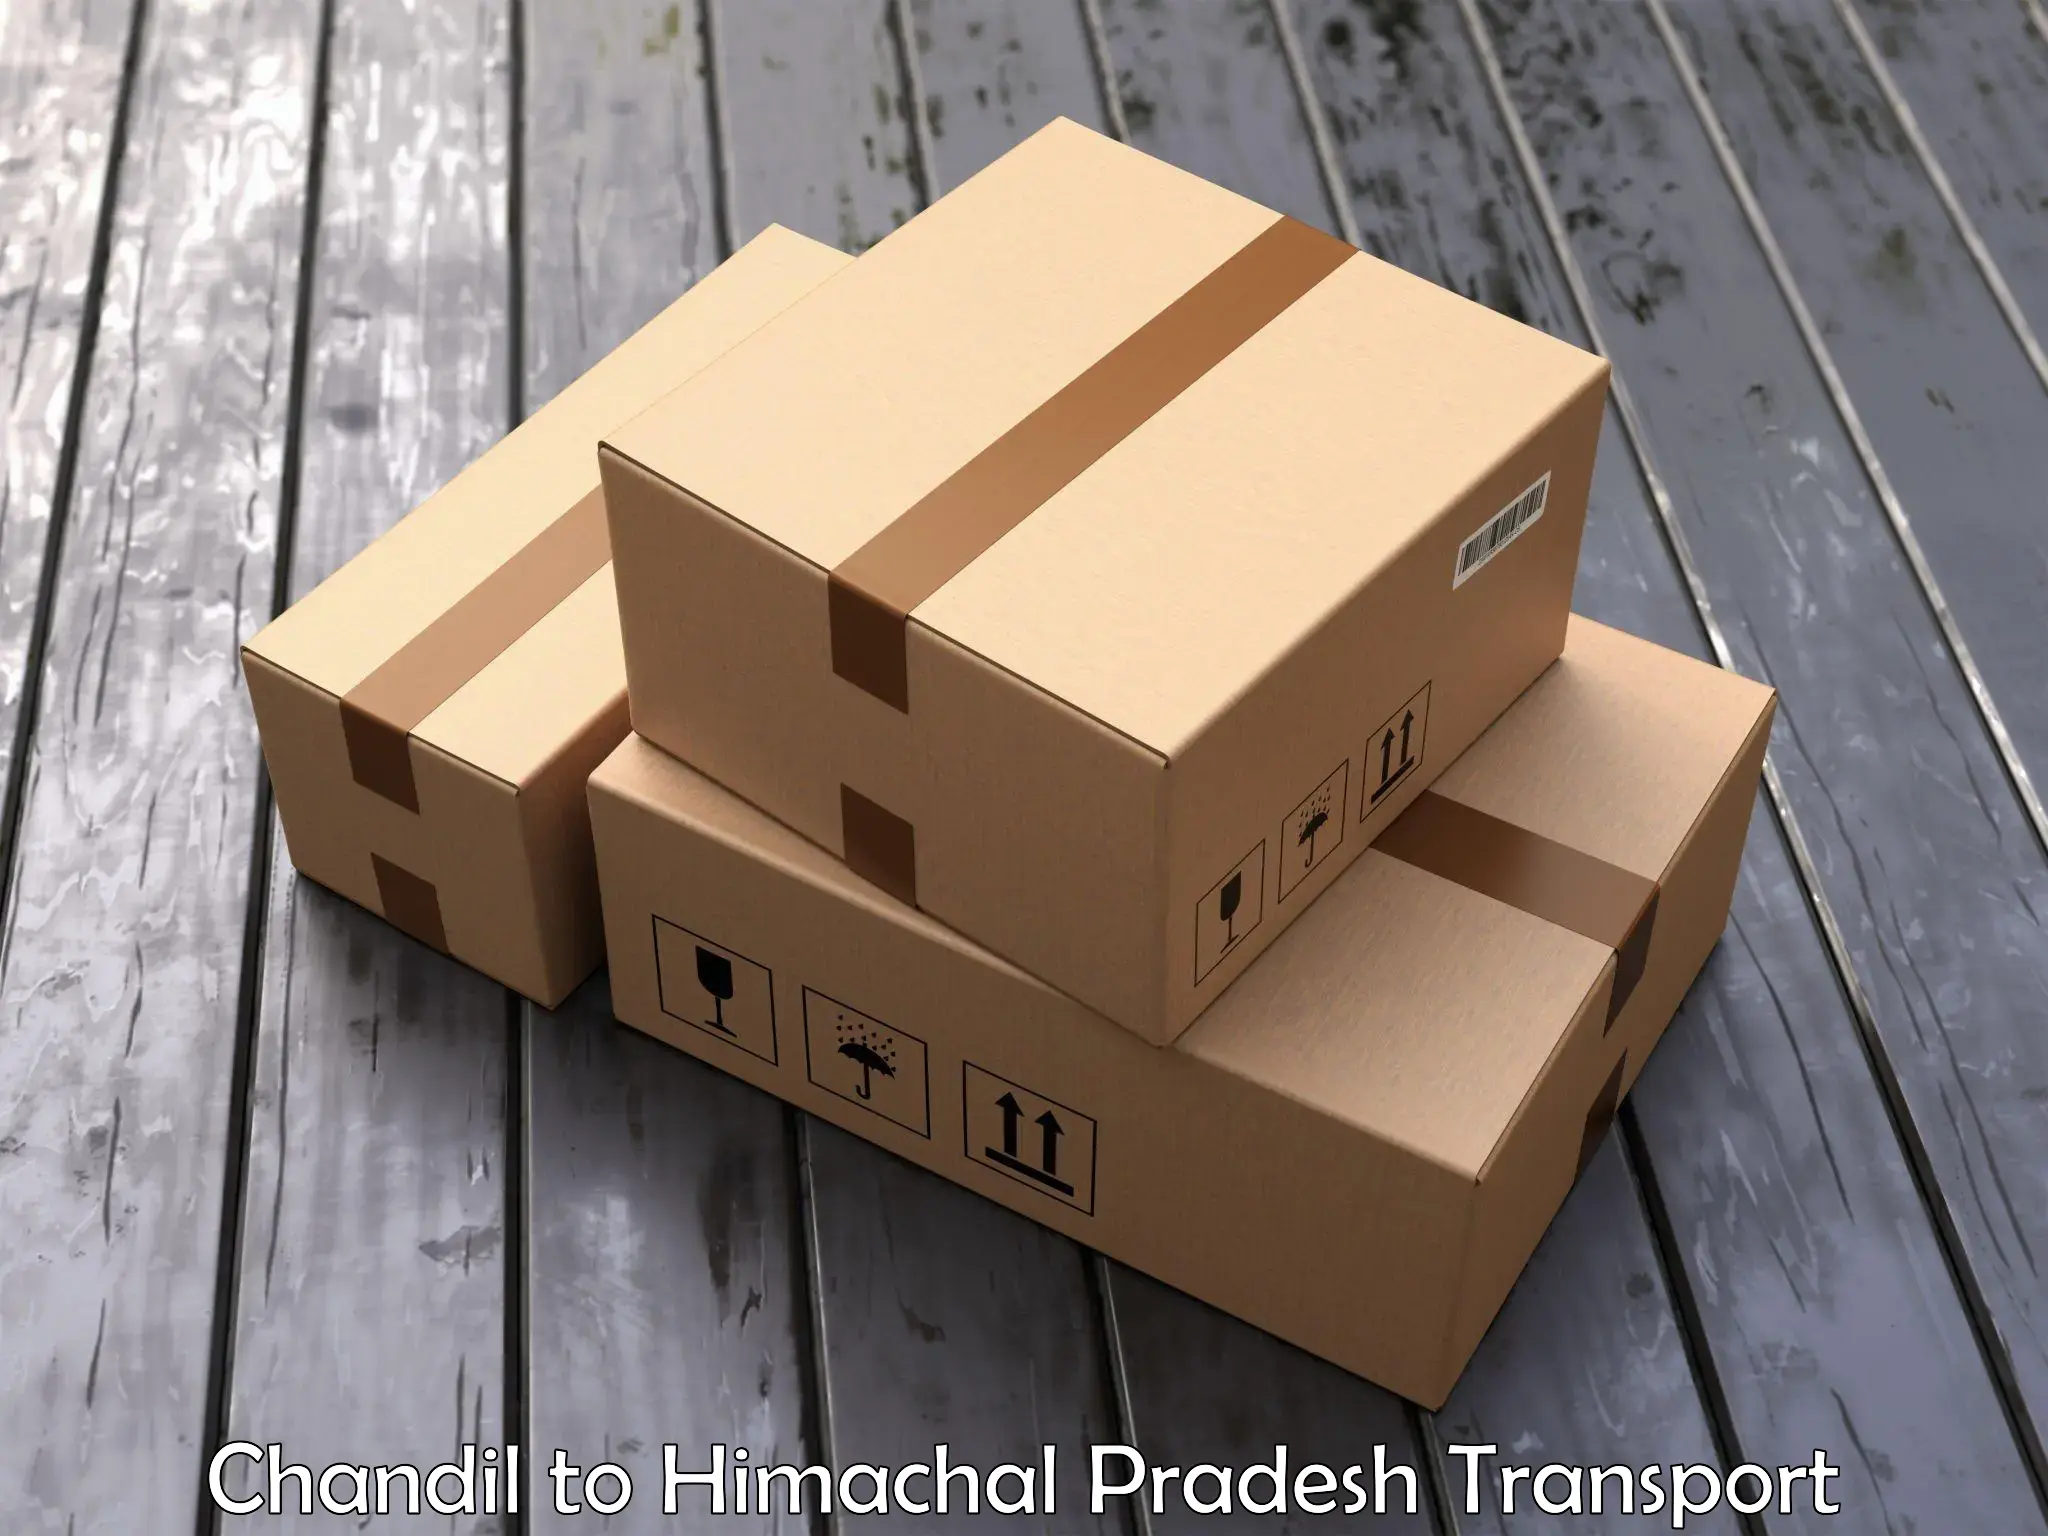 Pick up transport service Chandil to Kotkhai